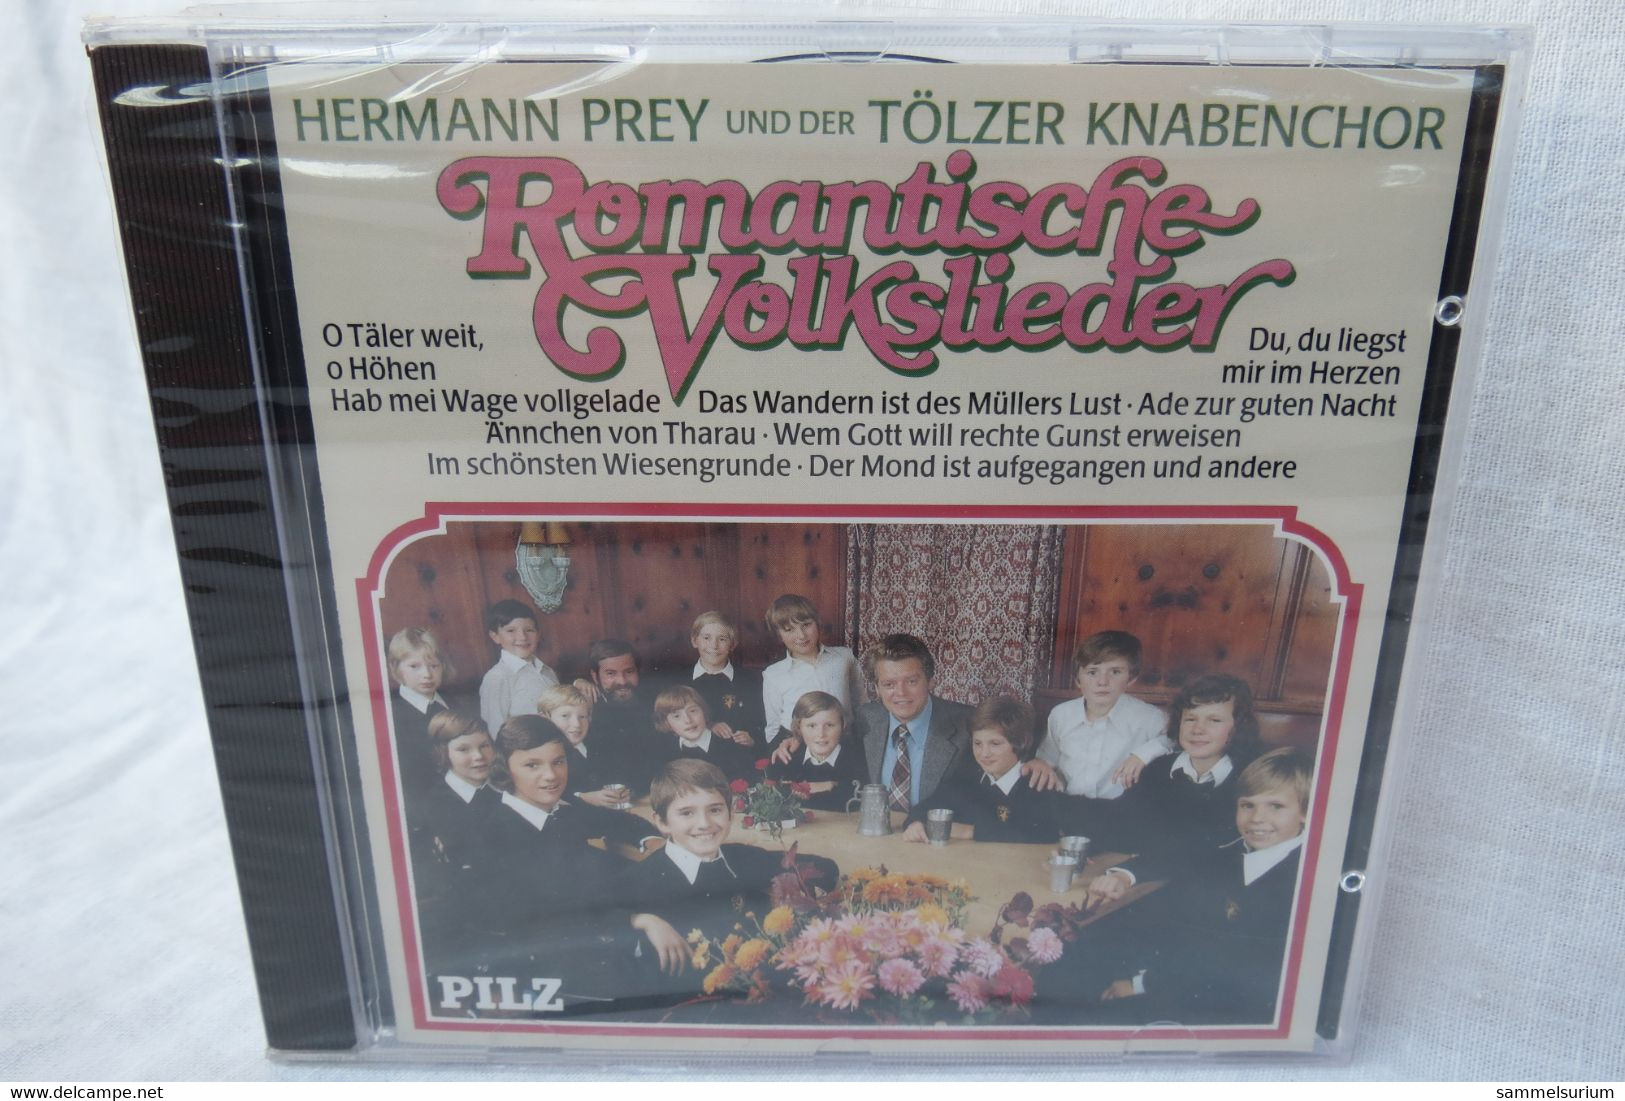 CD "Hermann Prey Und Der Tölzer Knabenchor" Romantische Volkslieder (ungespielt, Noch Original Eingeschweißt) - Sonstige - Deutsche Musik